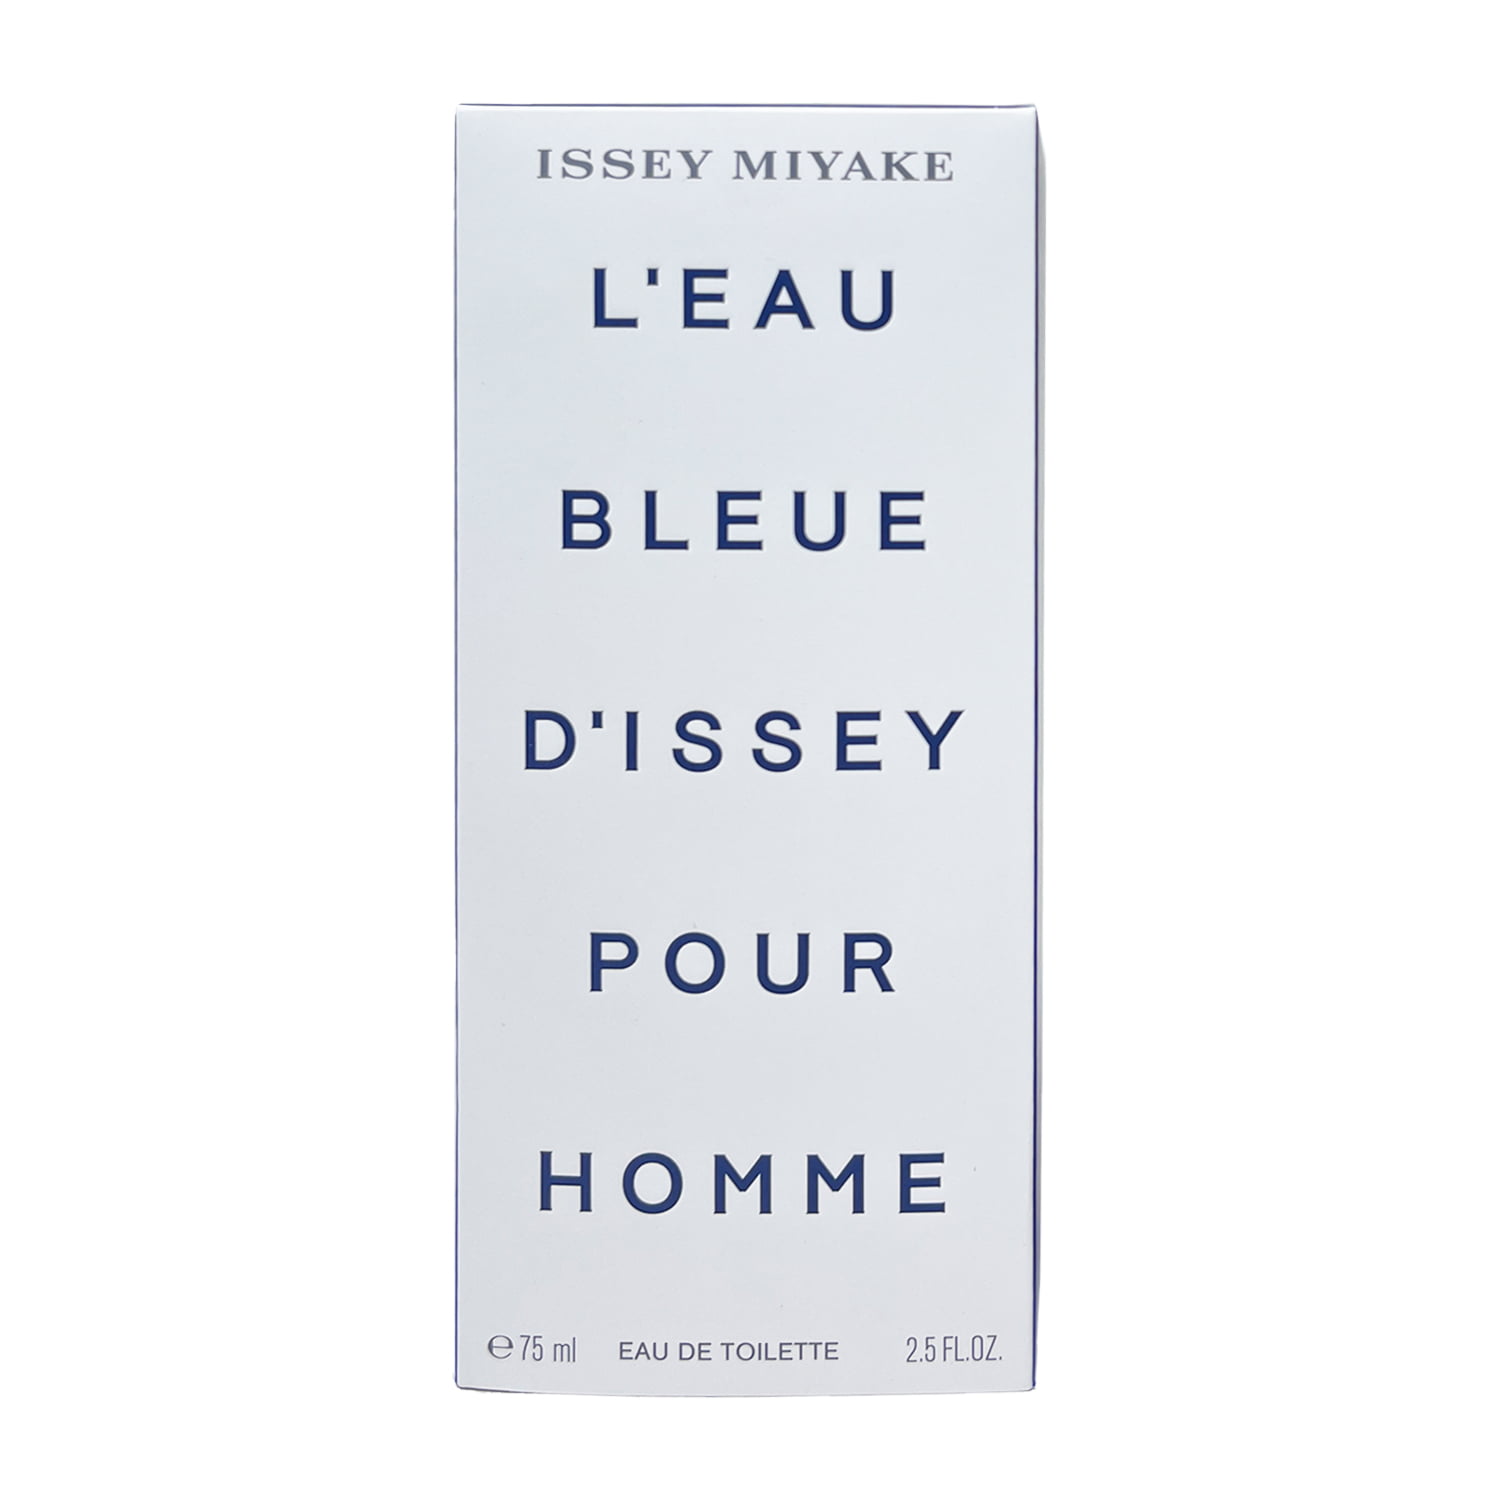 Issey Miyake L 'Eau d'Issey Pour Homme Eau de Toilette Spray 4.2 Oz -  Redbagstores